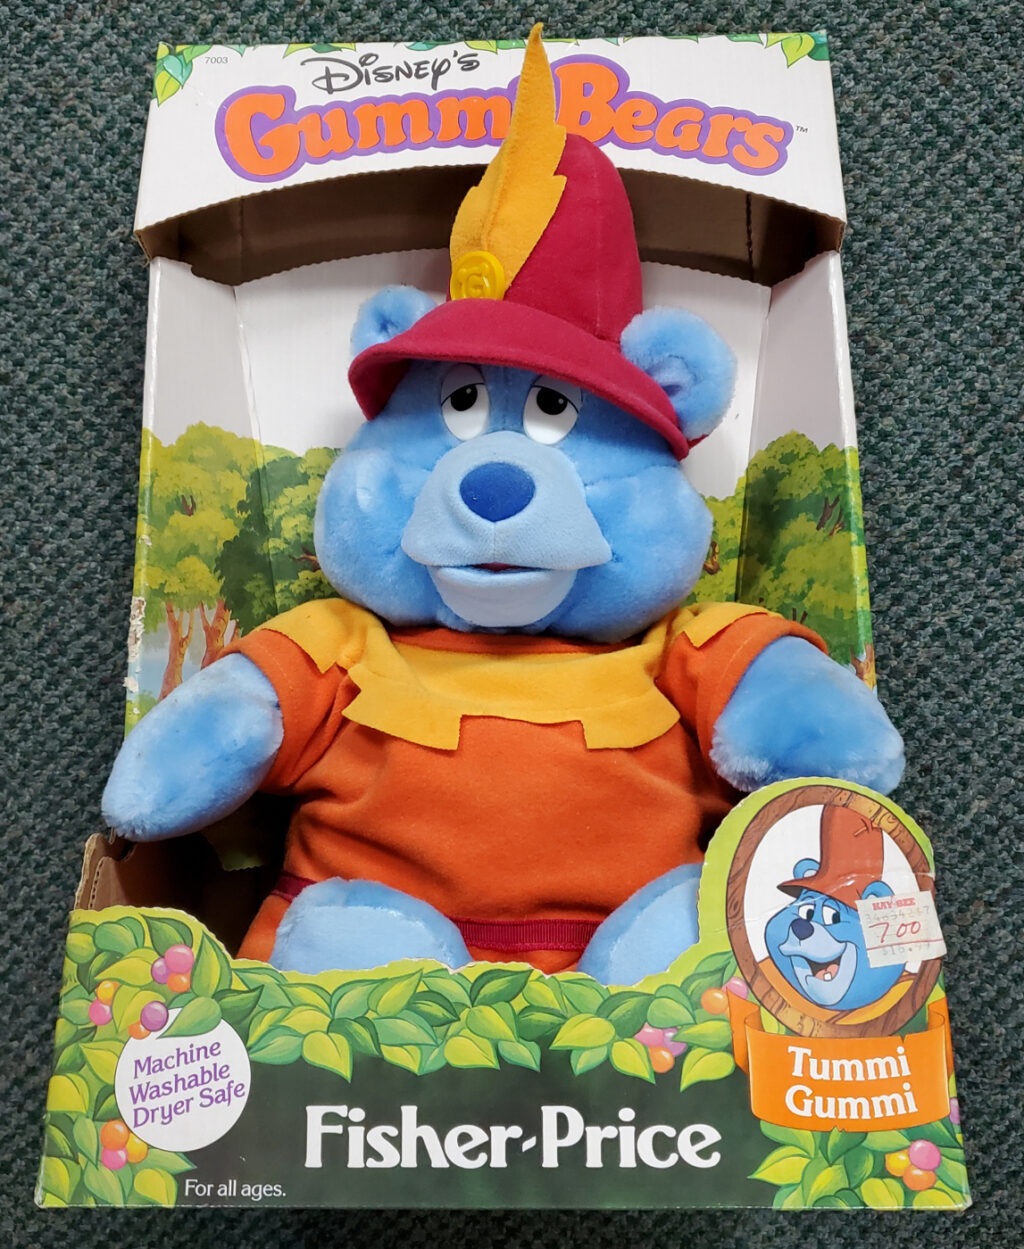 1985 Fisher-Price Disney's Gummi Bears Tummi Gummi 18" Plush Bear - Mint in Box 1